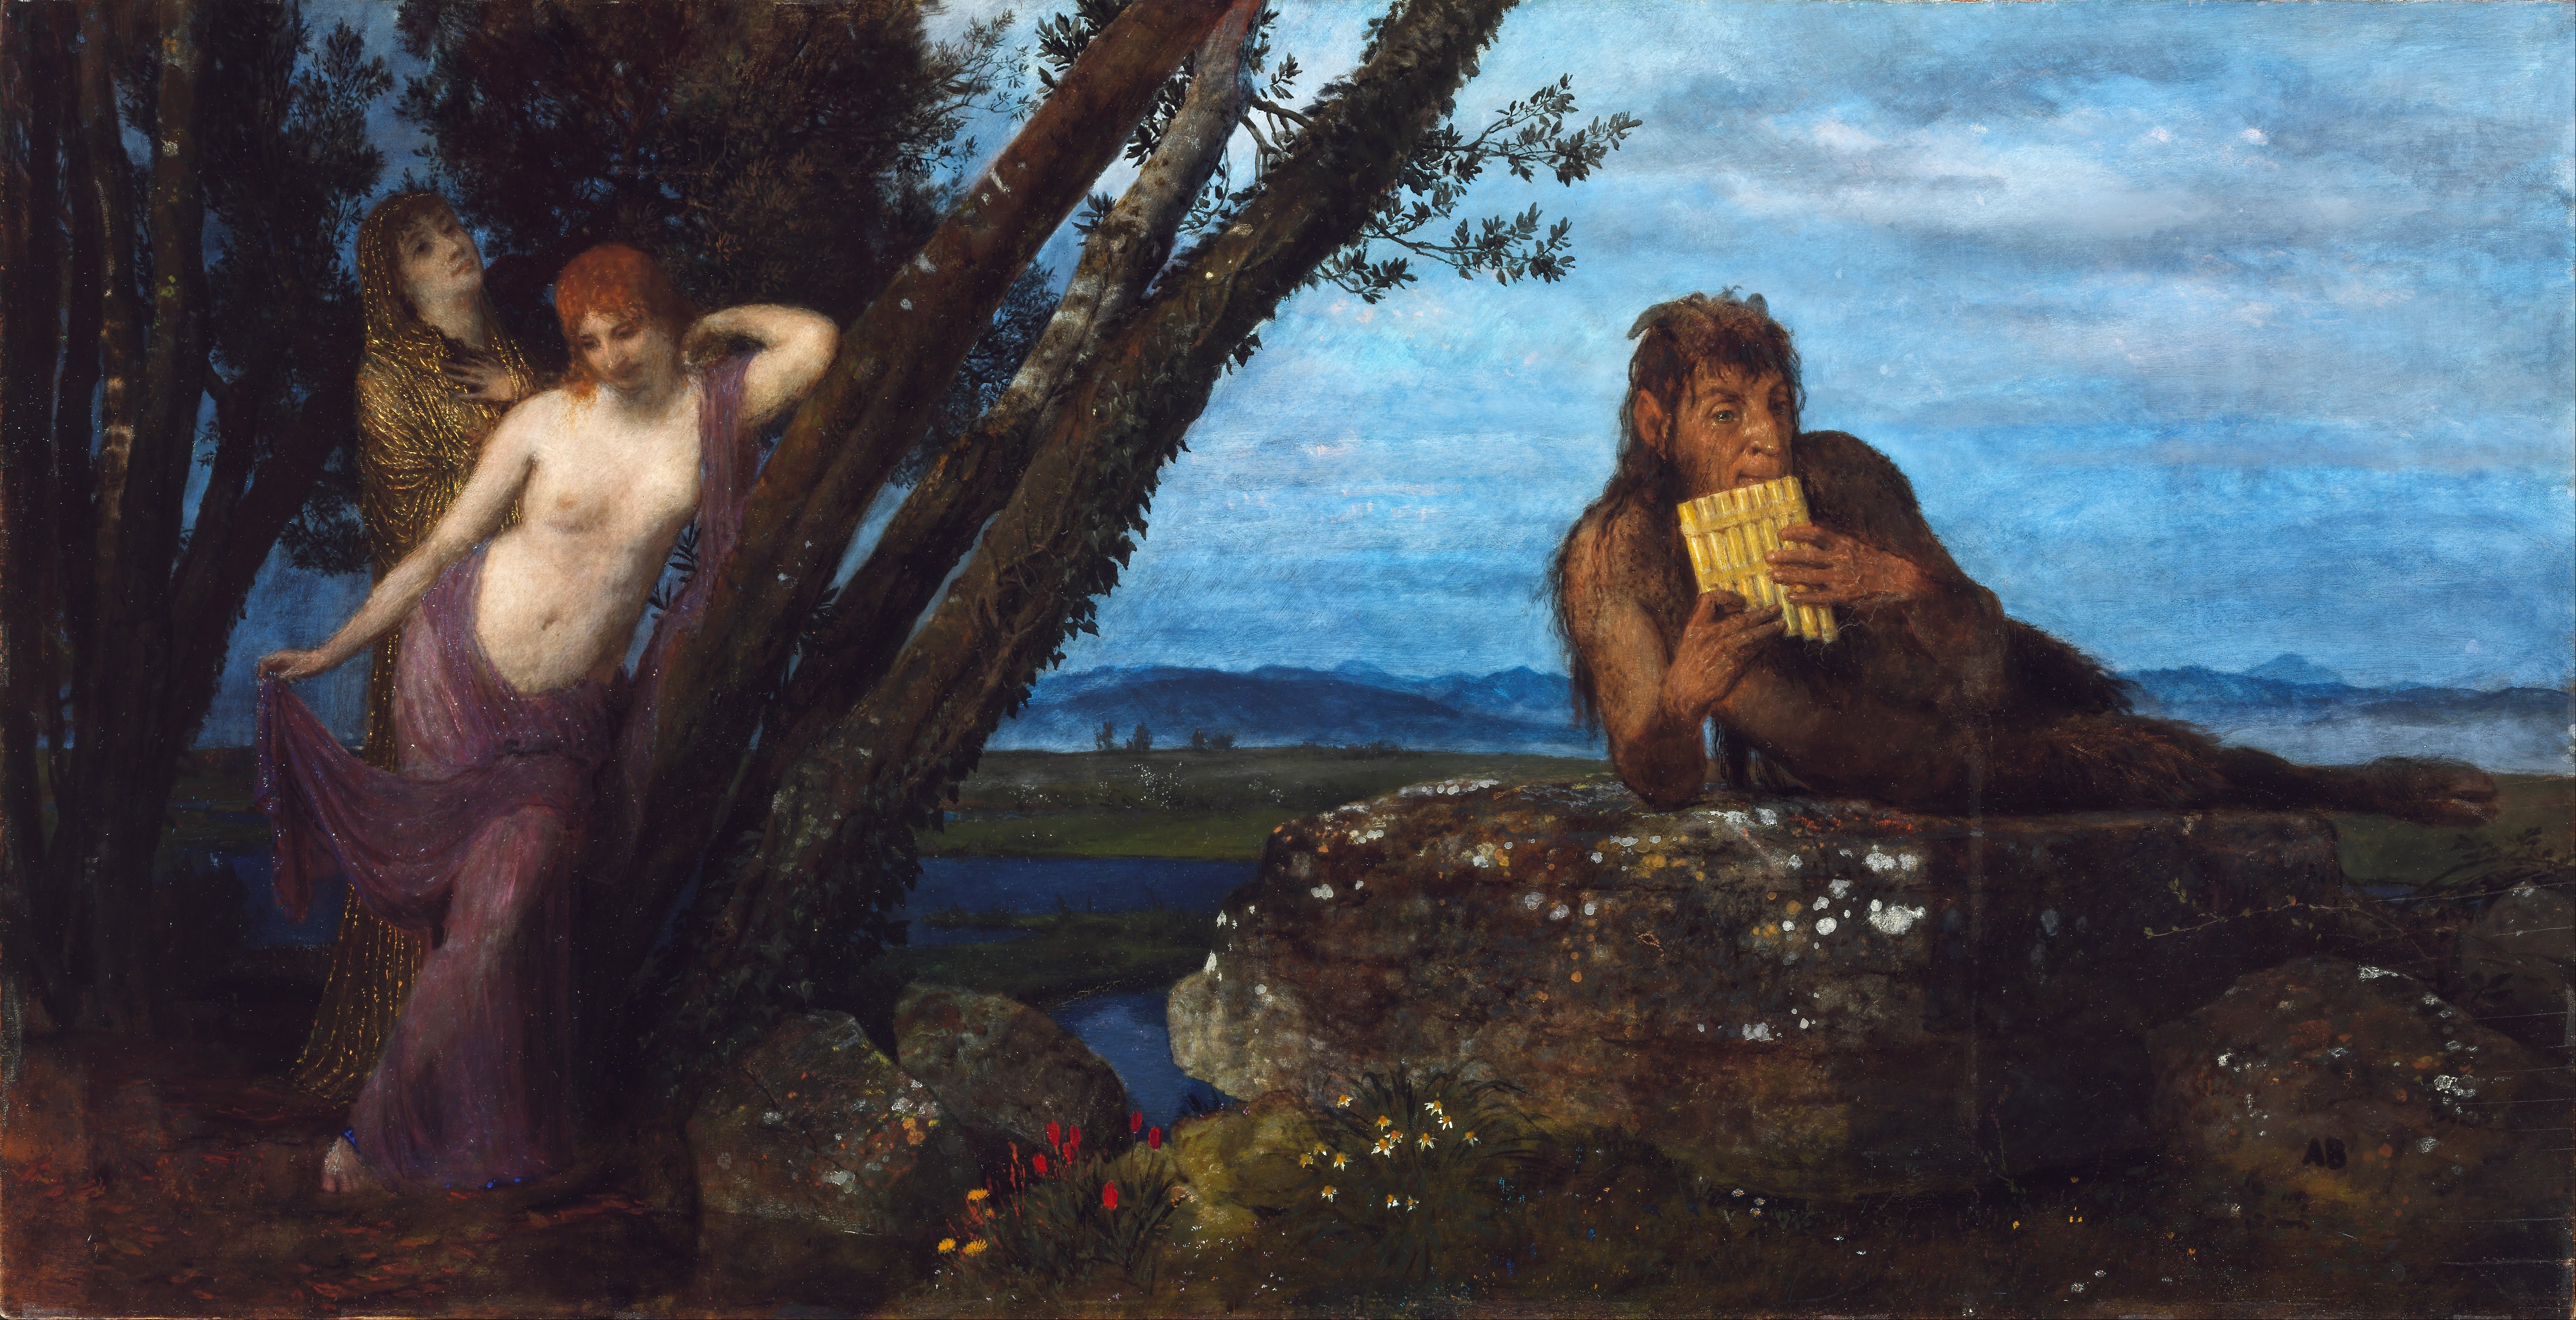 春日傍晚 by Arnold Böcklin - 1879 - 67.4 x 129.5 cm 